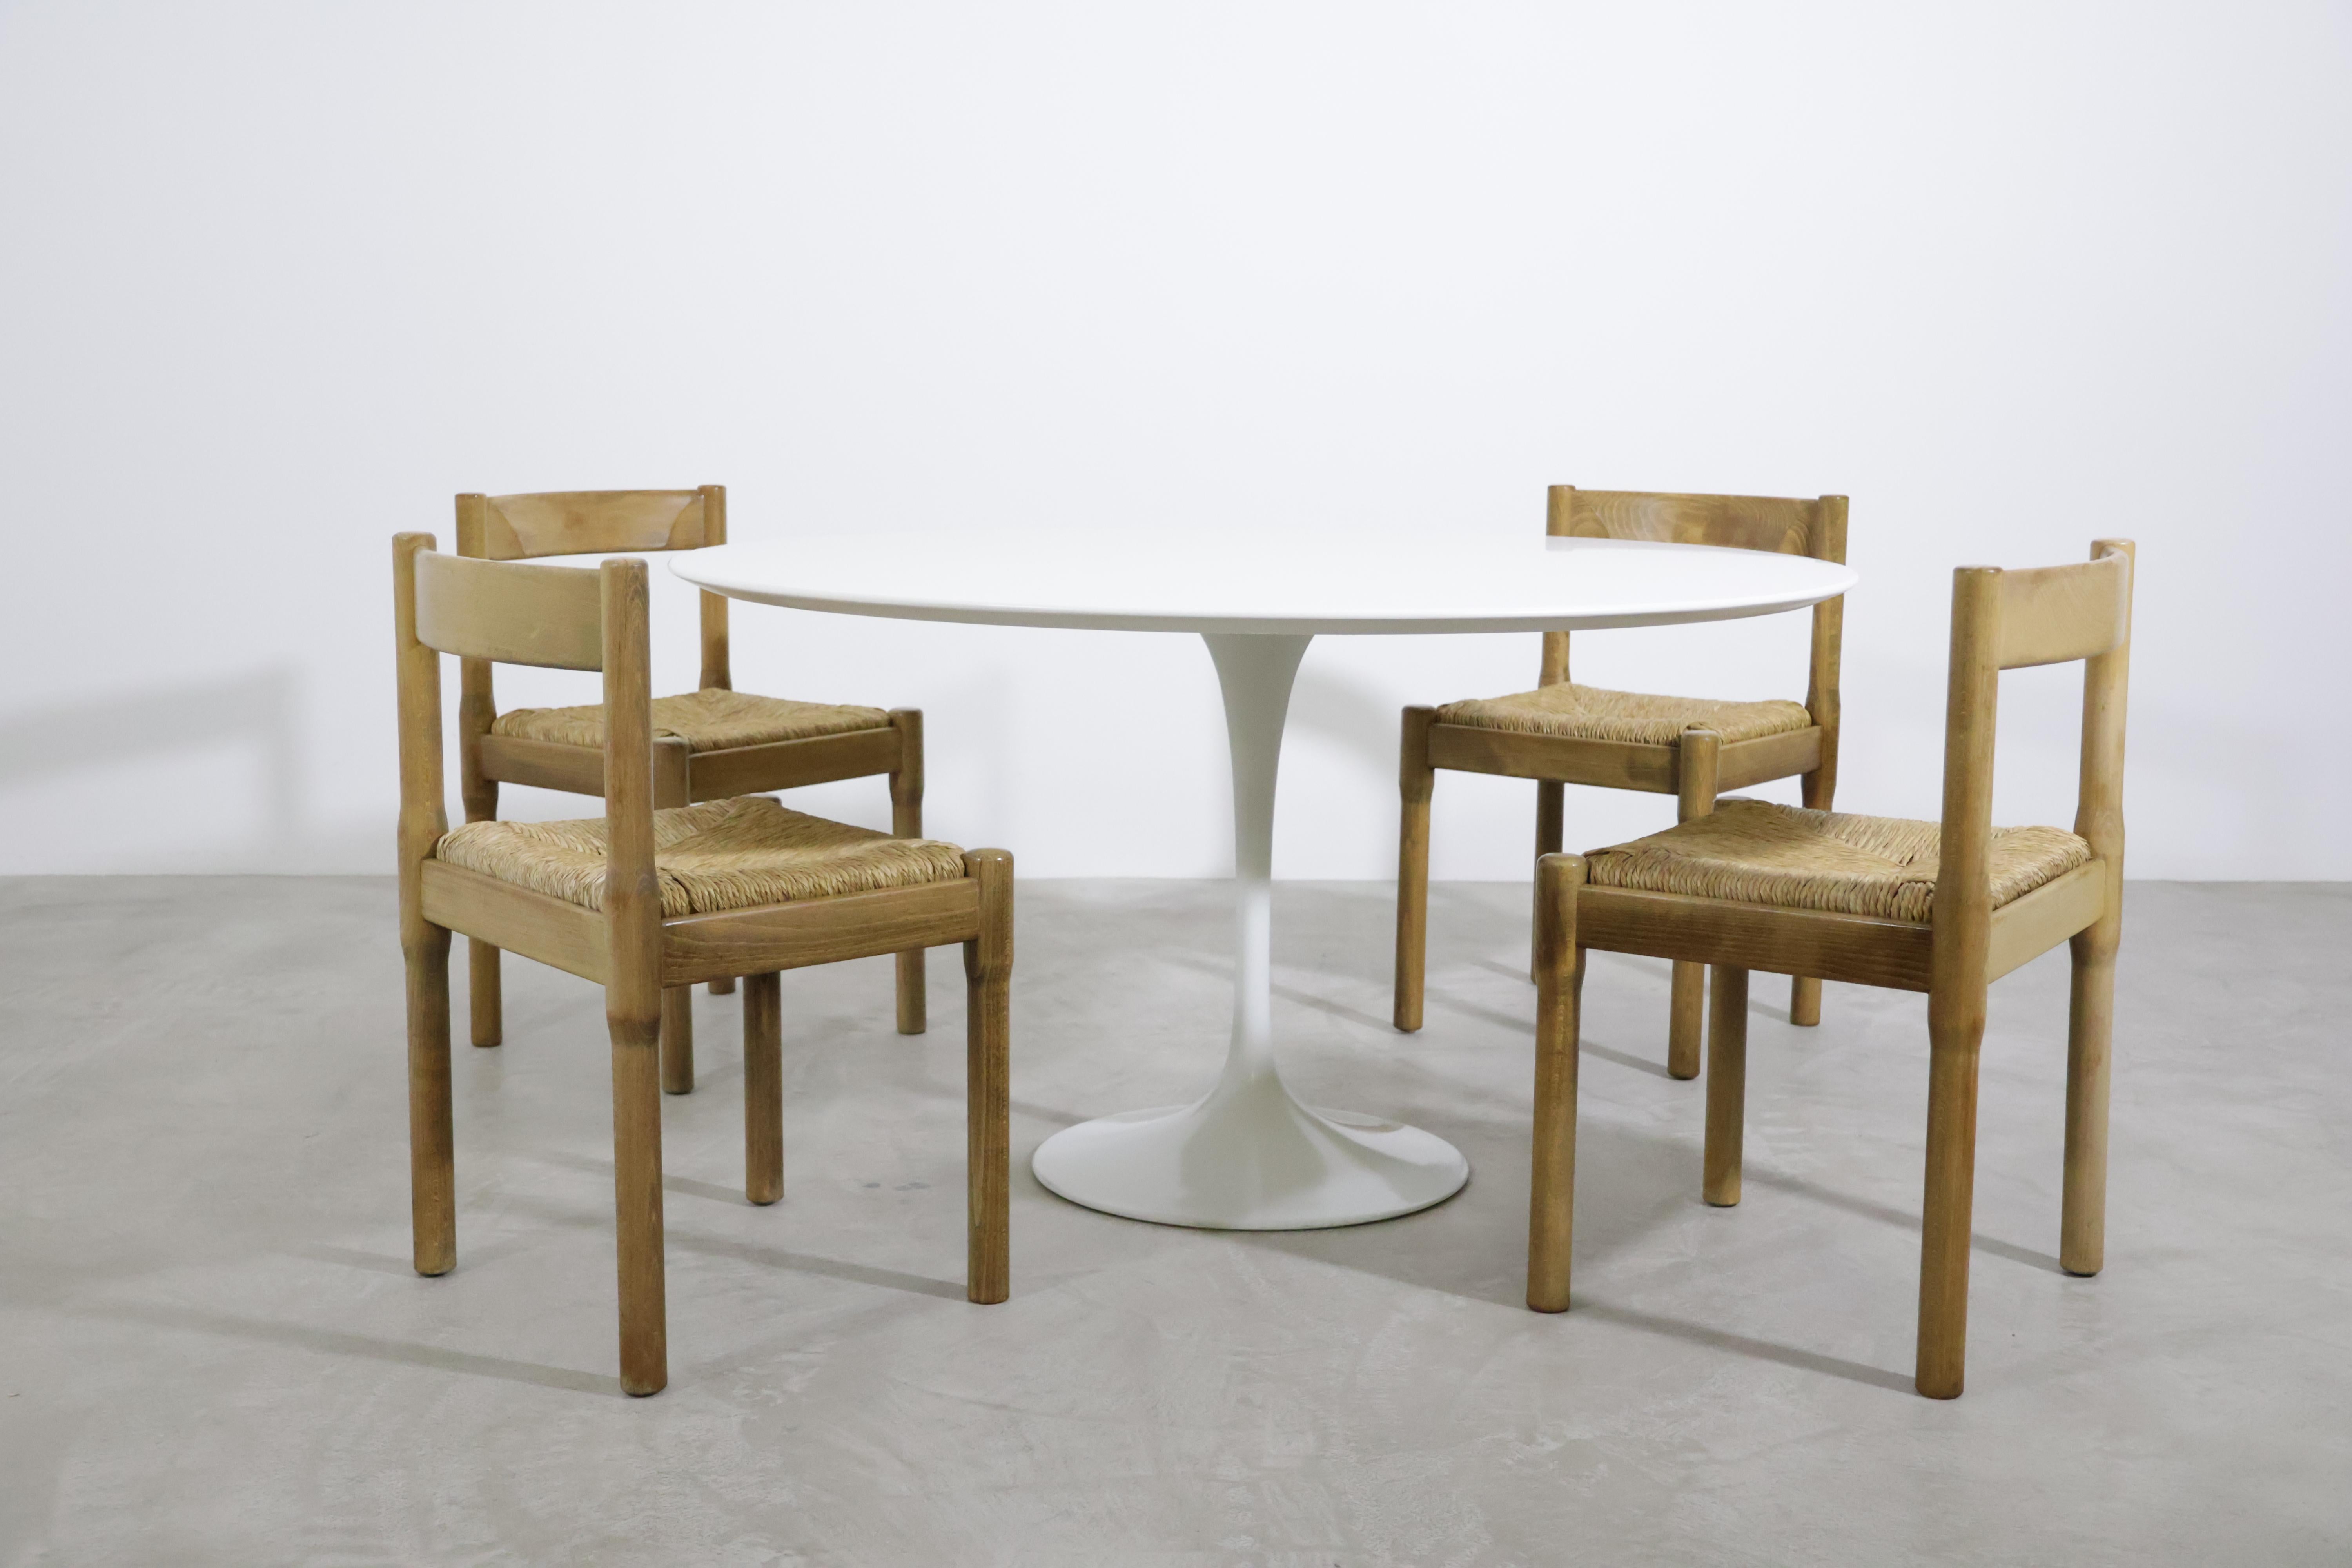 Magnifique ensemble de 12 chaises de salle à manger 'Carimate' par Vico Magistretti pour Mario Luigi Comi/Italie dans les années 60 !
La chaise 